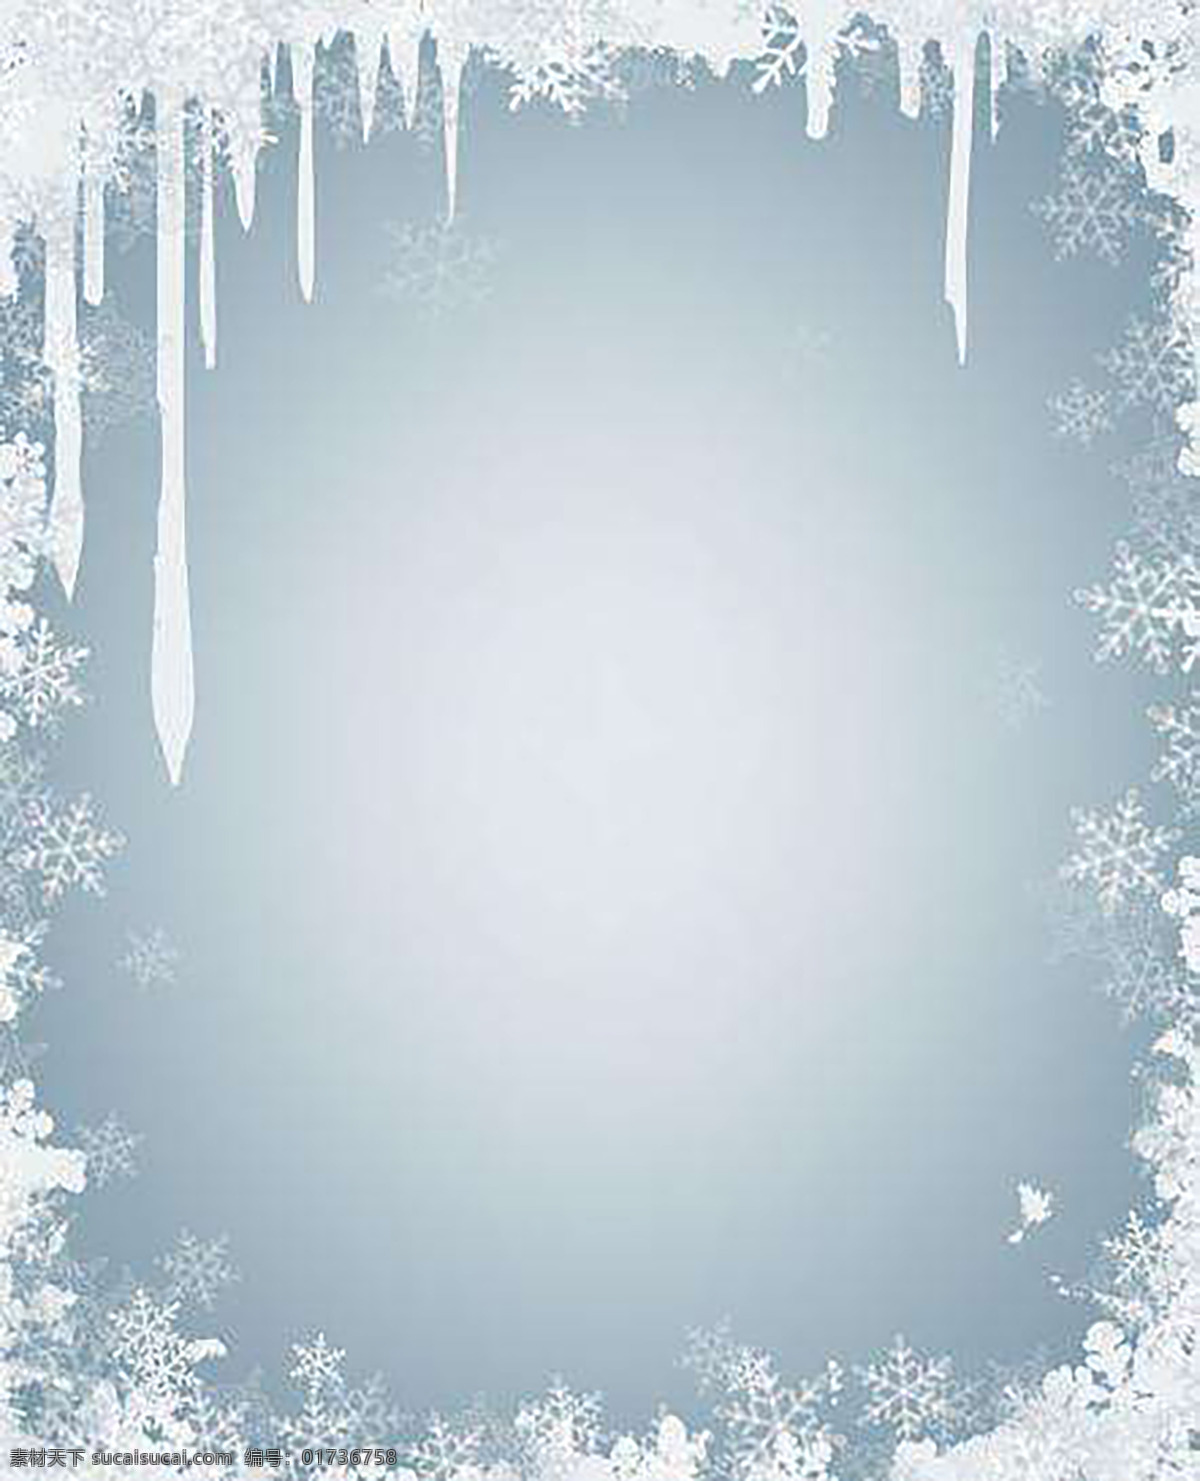 白色 透明 冰晶 雪花 图 创意 淡白色 冬季 简约 浅白色 浅蓝色